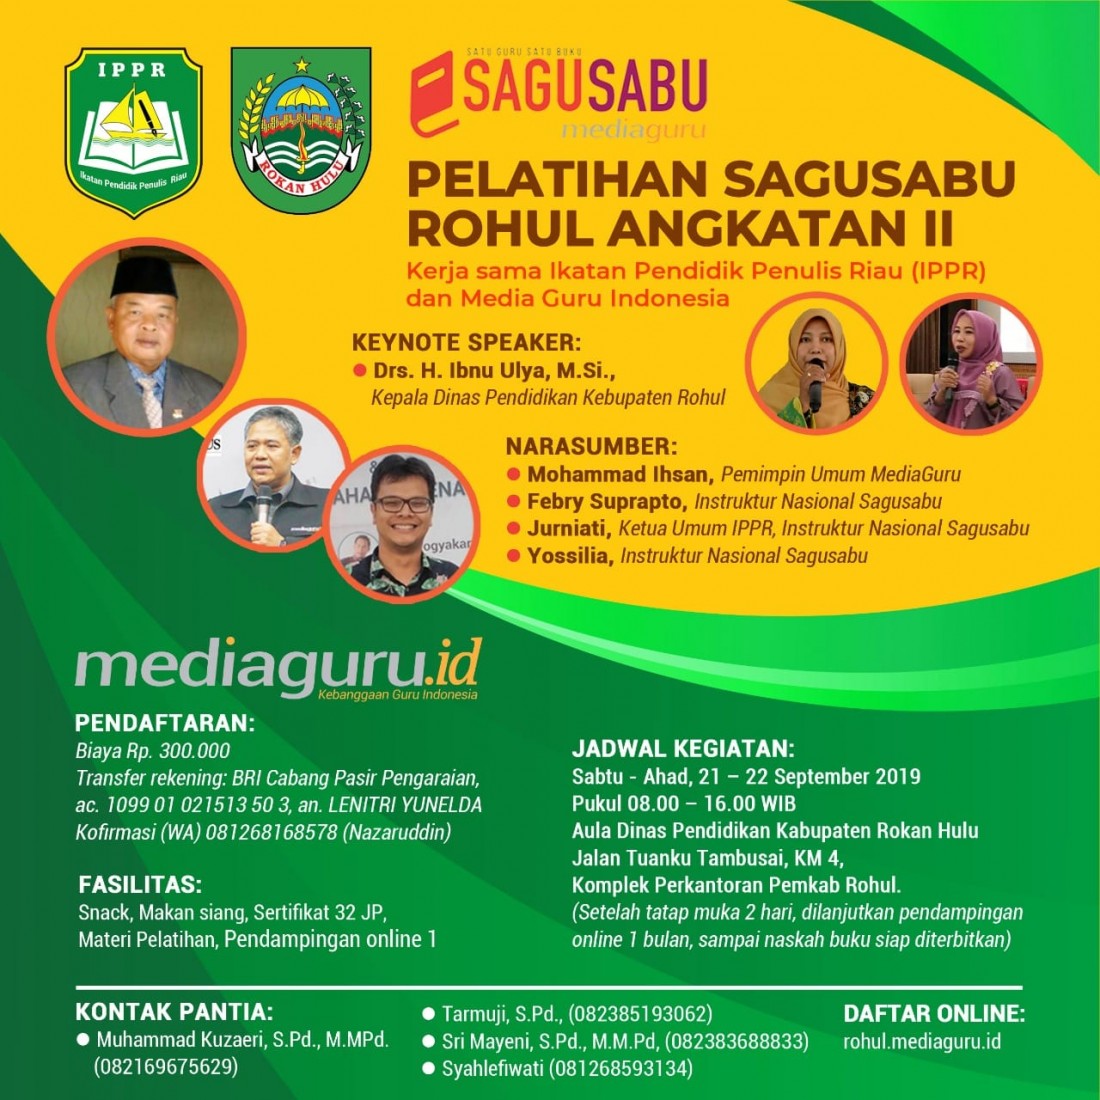 Pelatihan Sagusabu Rohul Riau Angkatan II (21 - 22 September 2019)